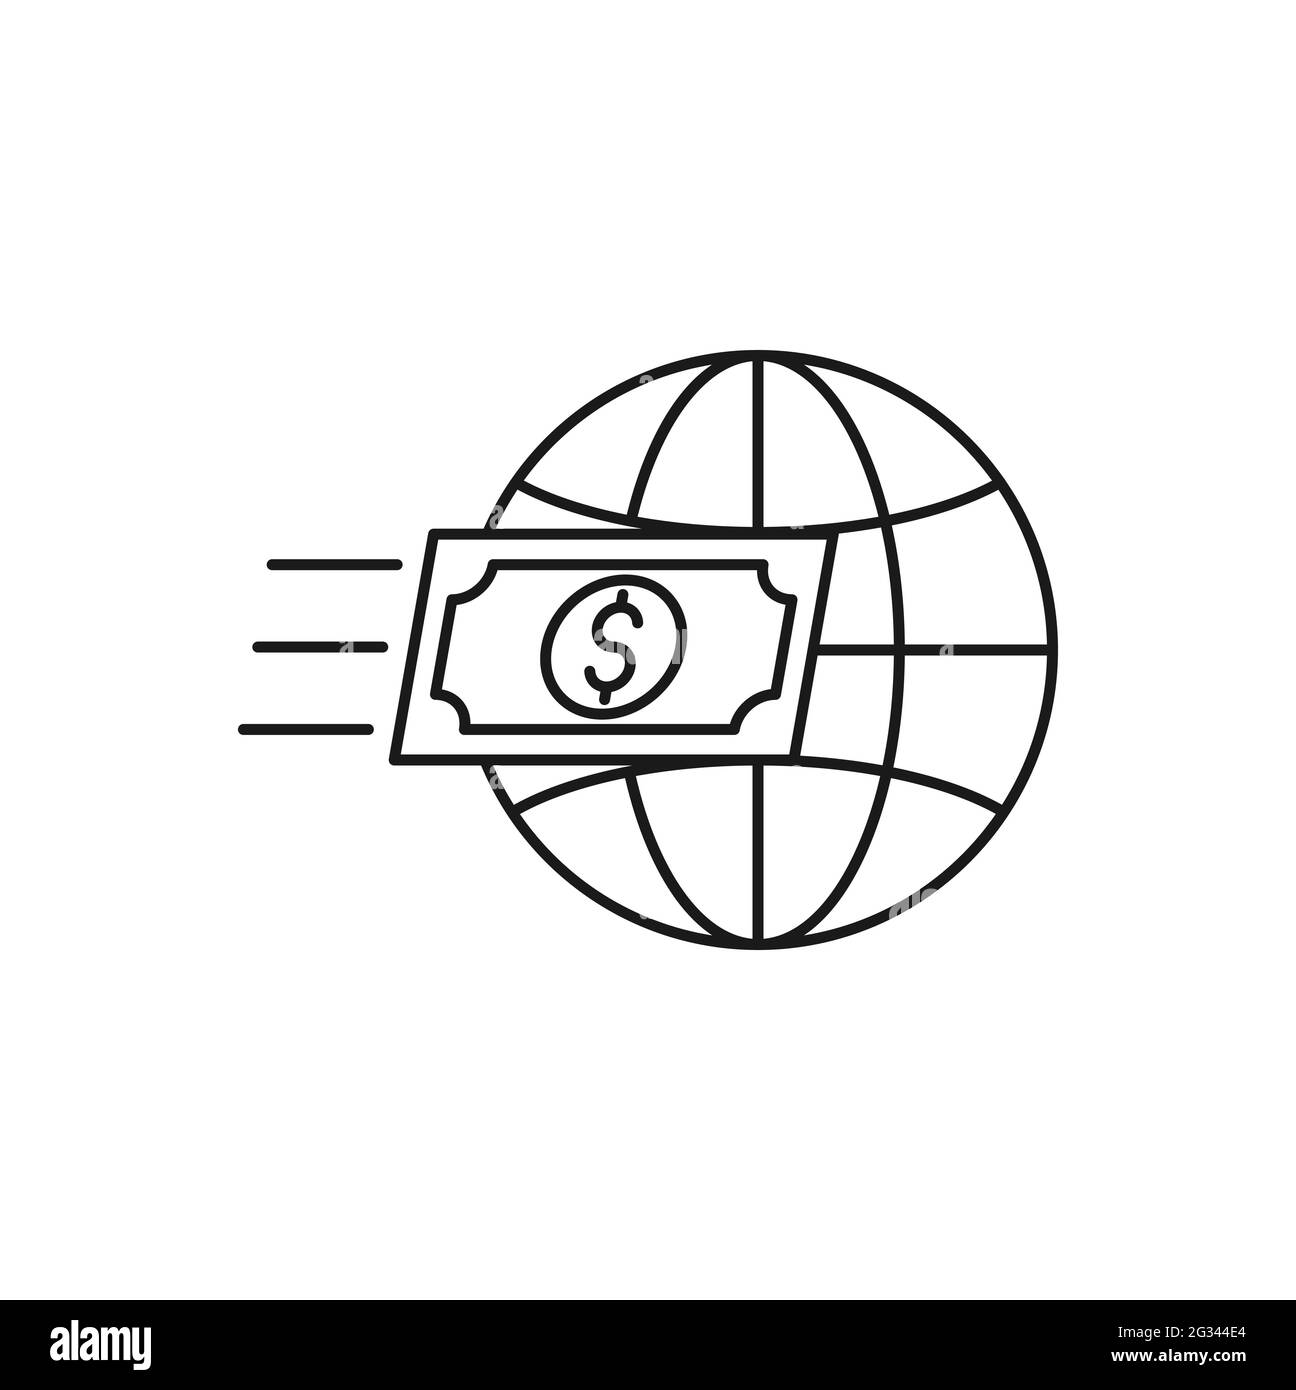 Geld mit Globe Icon Vektor-Design. Globe with Dollar Money Cash Icon Design Konzept für Banking, Finance, Currency und Trading Investment Business w Stock Vektor